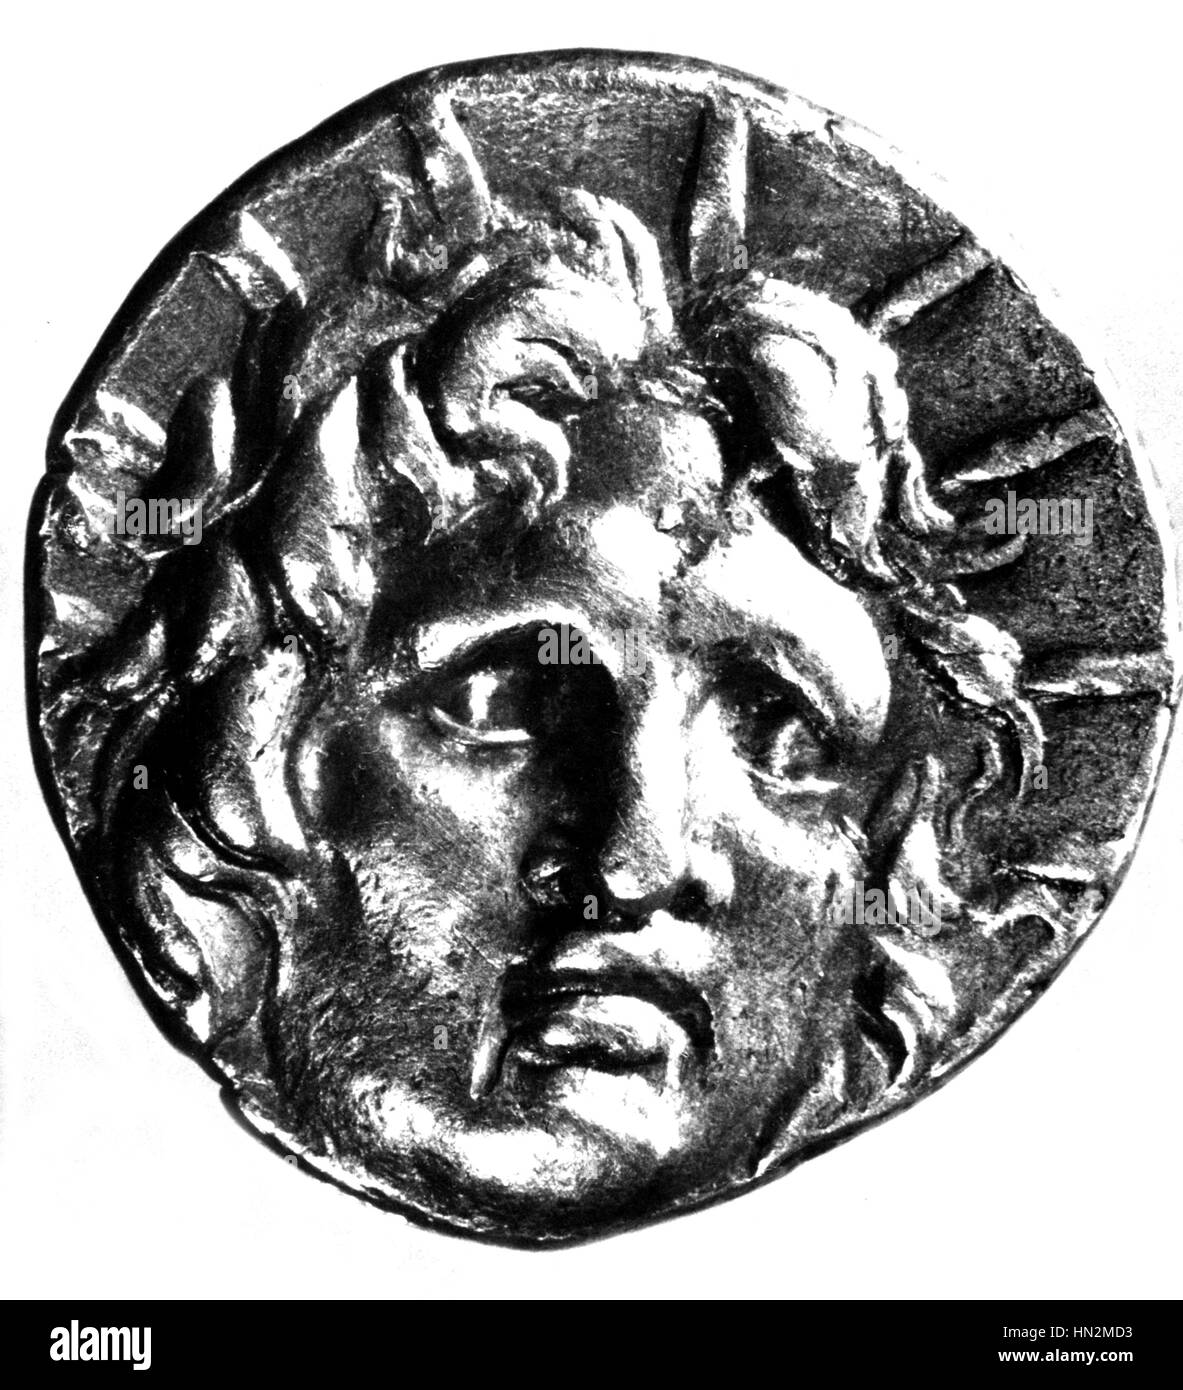 Moneda de oro que representa al sol con las características de Alejandro Magno 4thC A.C. la antigua Grecia París, Bibliotheque Nationale de France Foto de stock